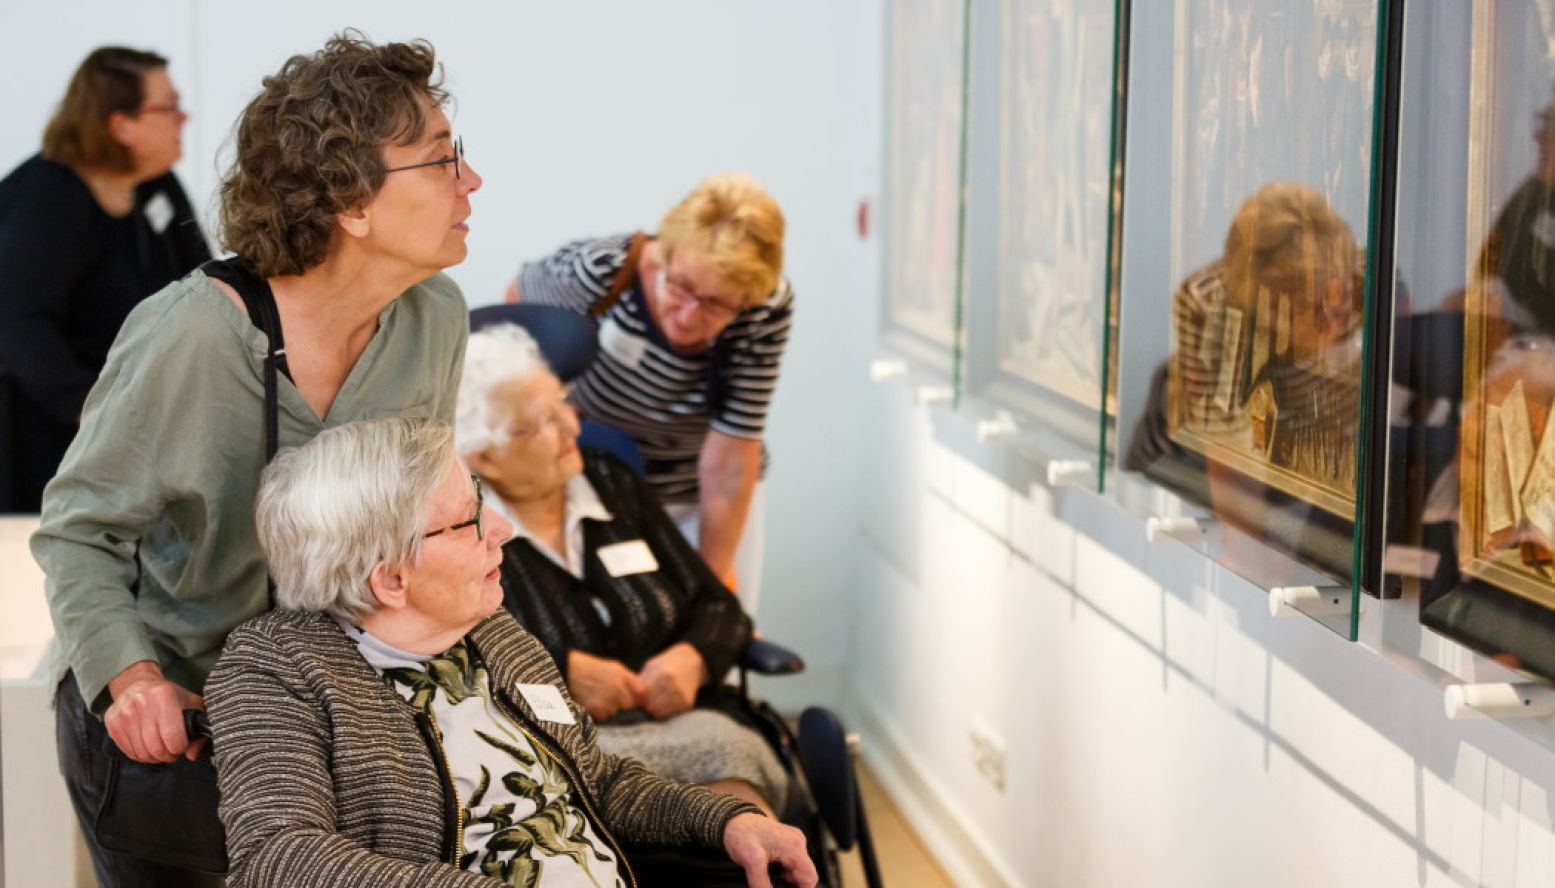 Een museumbezoek levert vaak een beter contact tussen mensen met dementie en hun begeleider. Foto: Museum Boerhaave